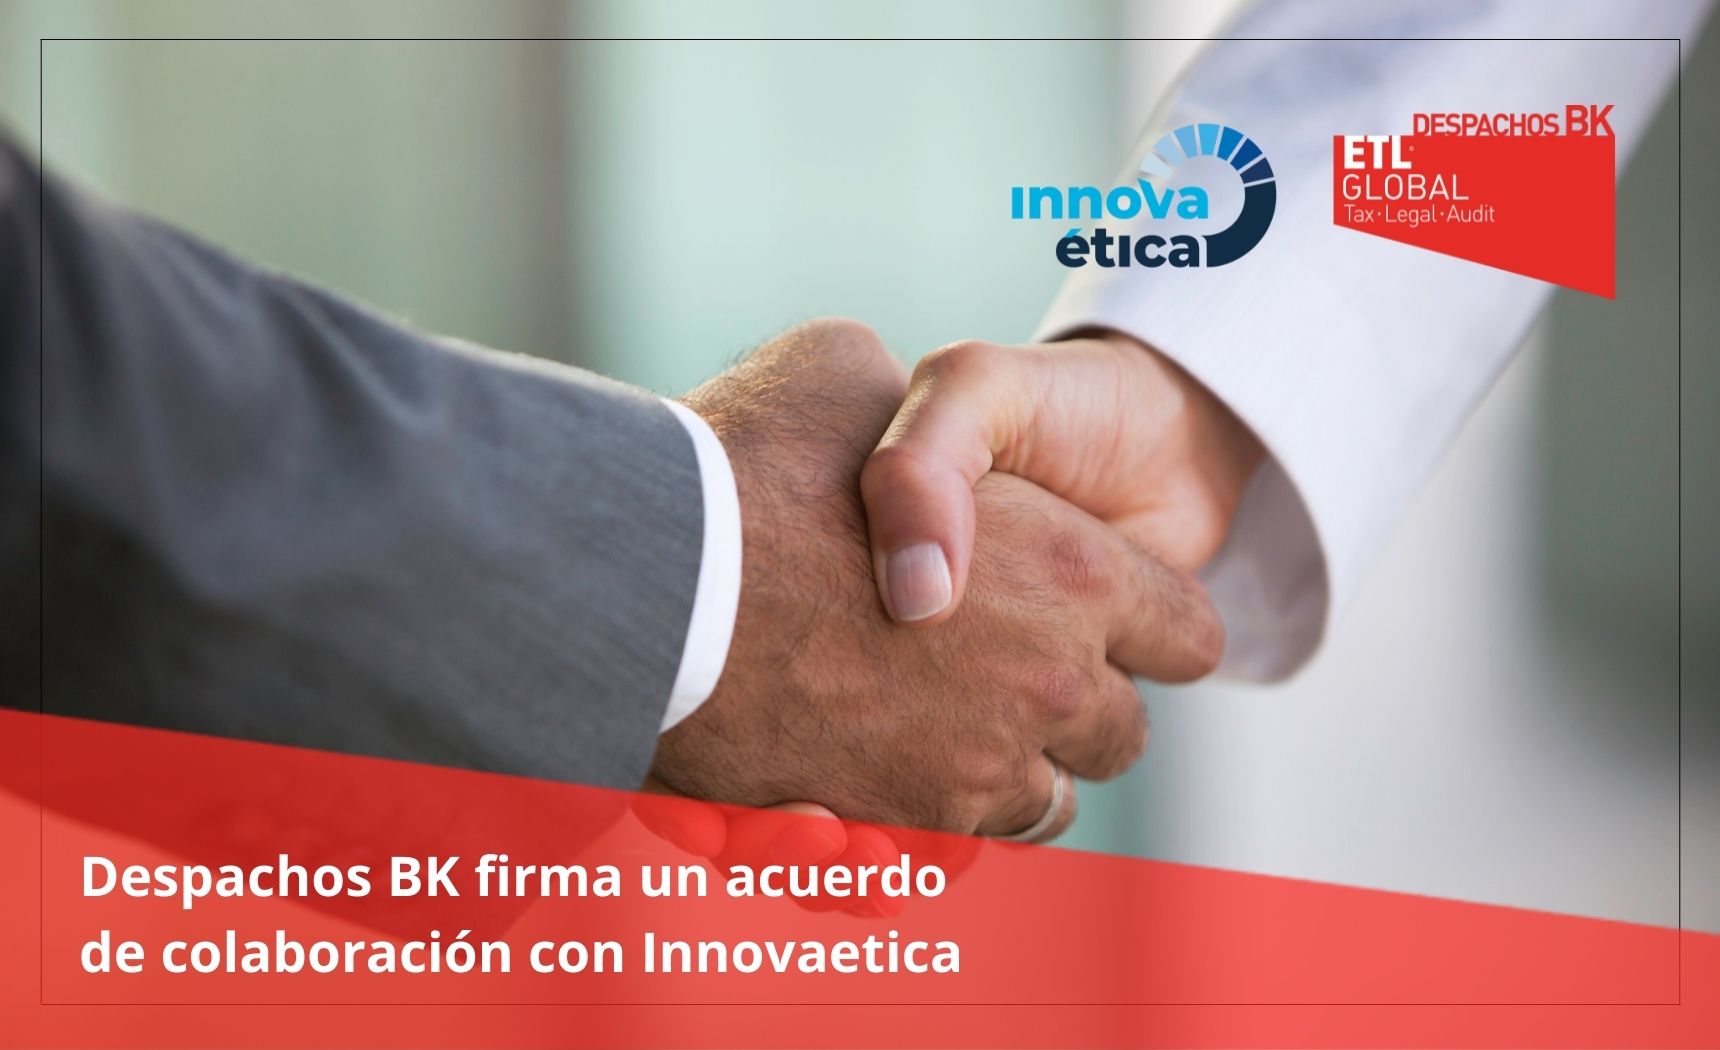 Despachos BK firma un acuerdo de colaboración con Innovaetica